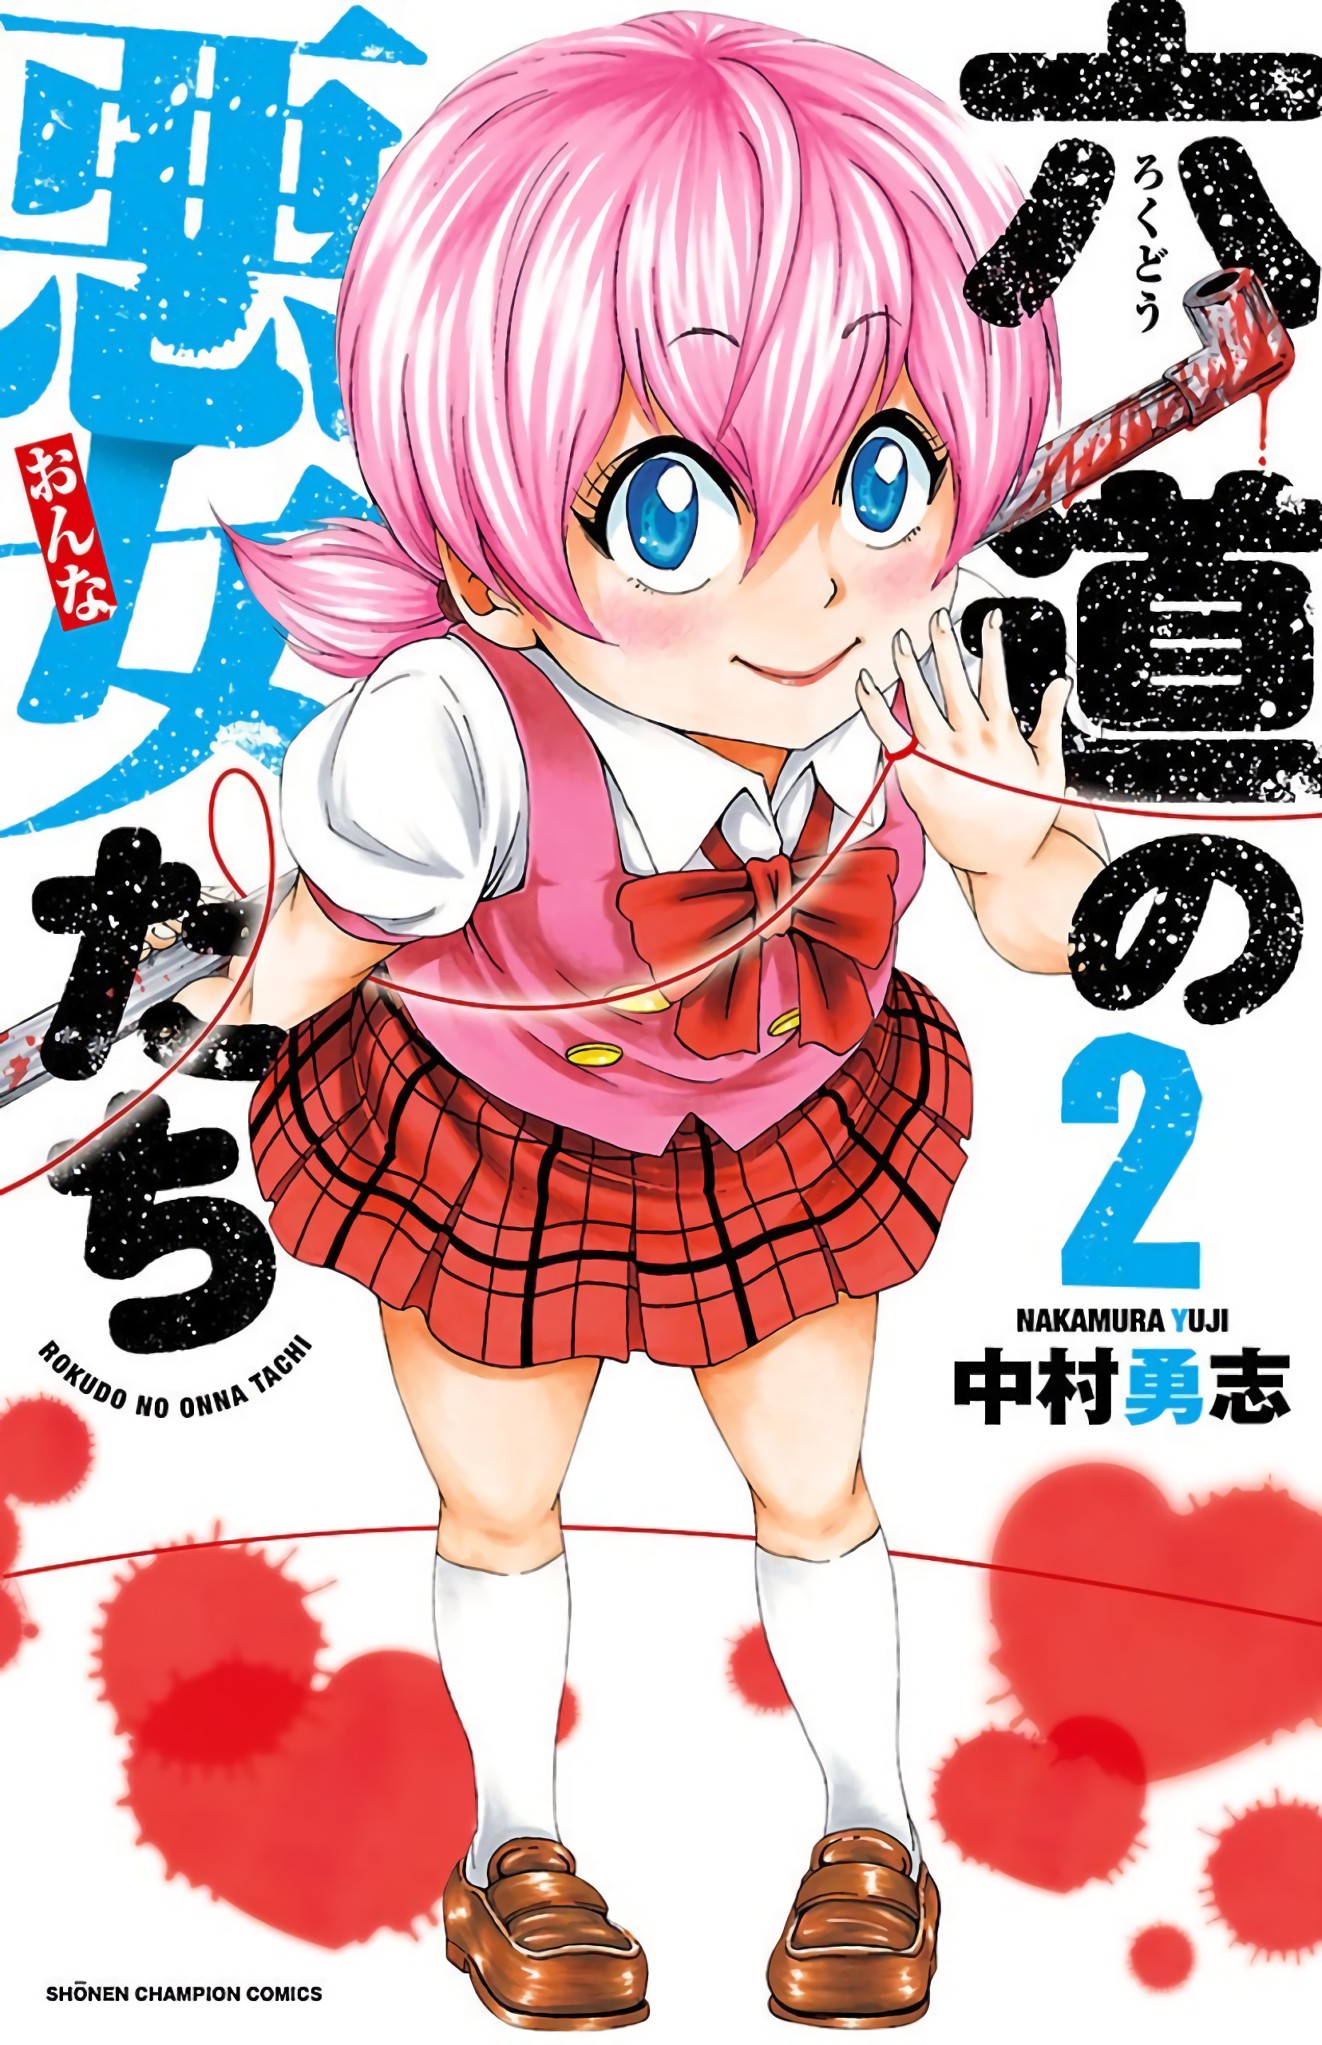 Anime, Rokudou no Onna-tachi Wiki